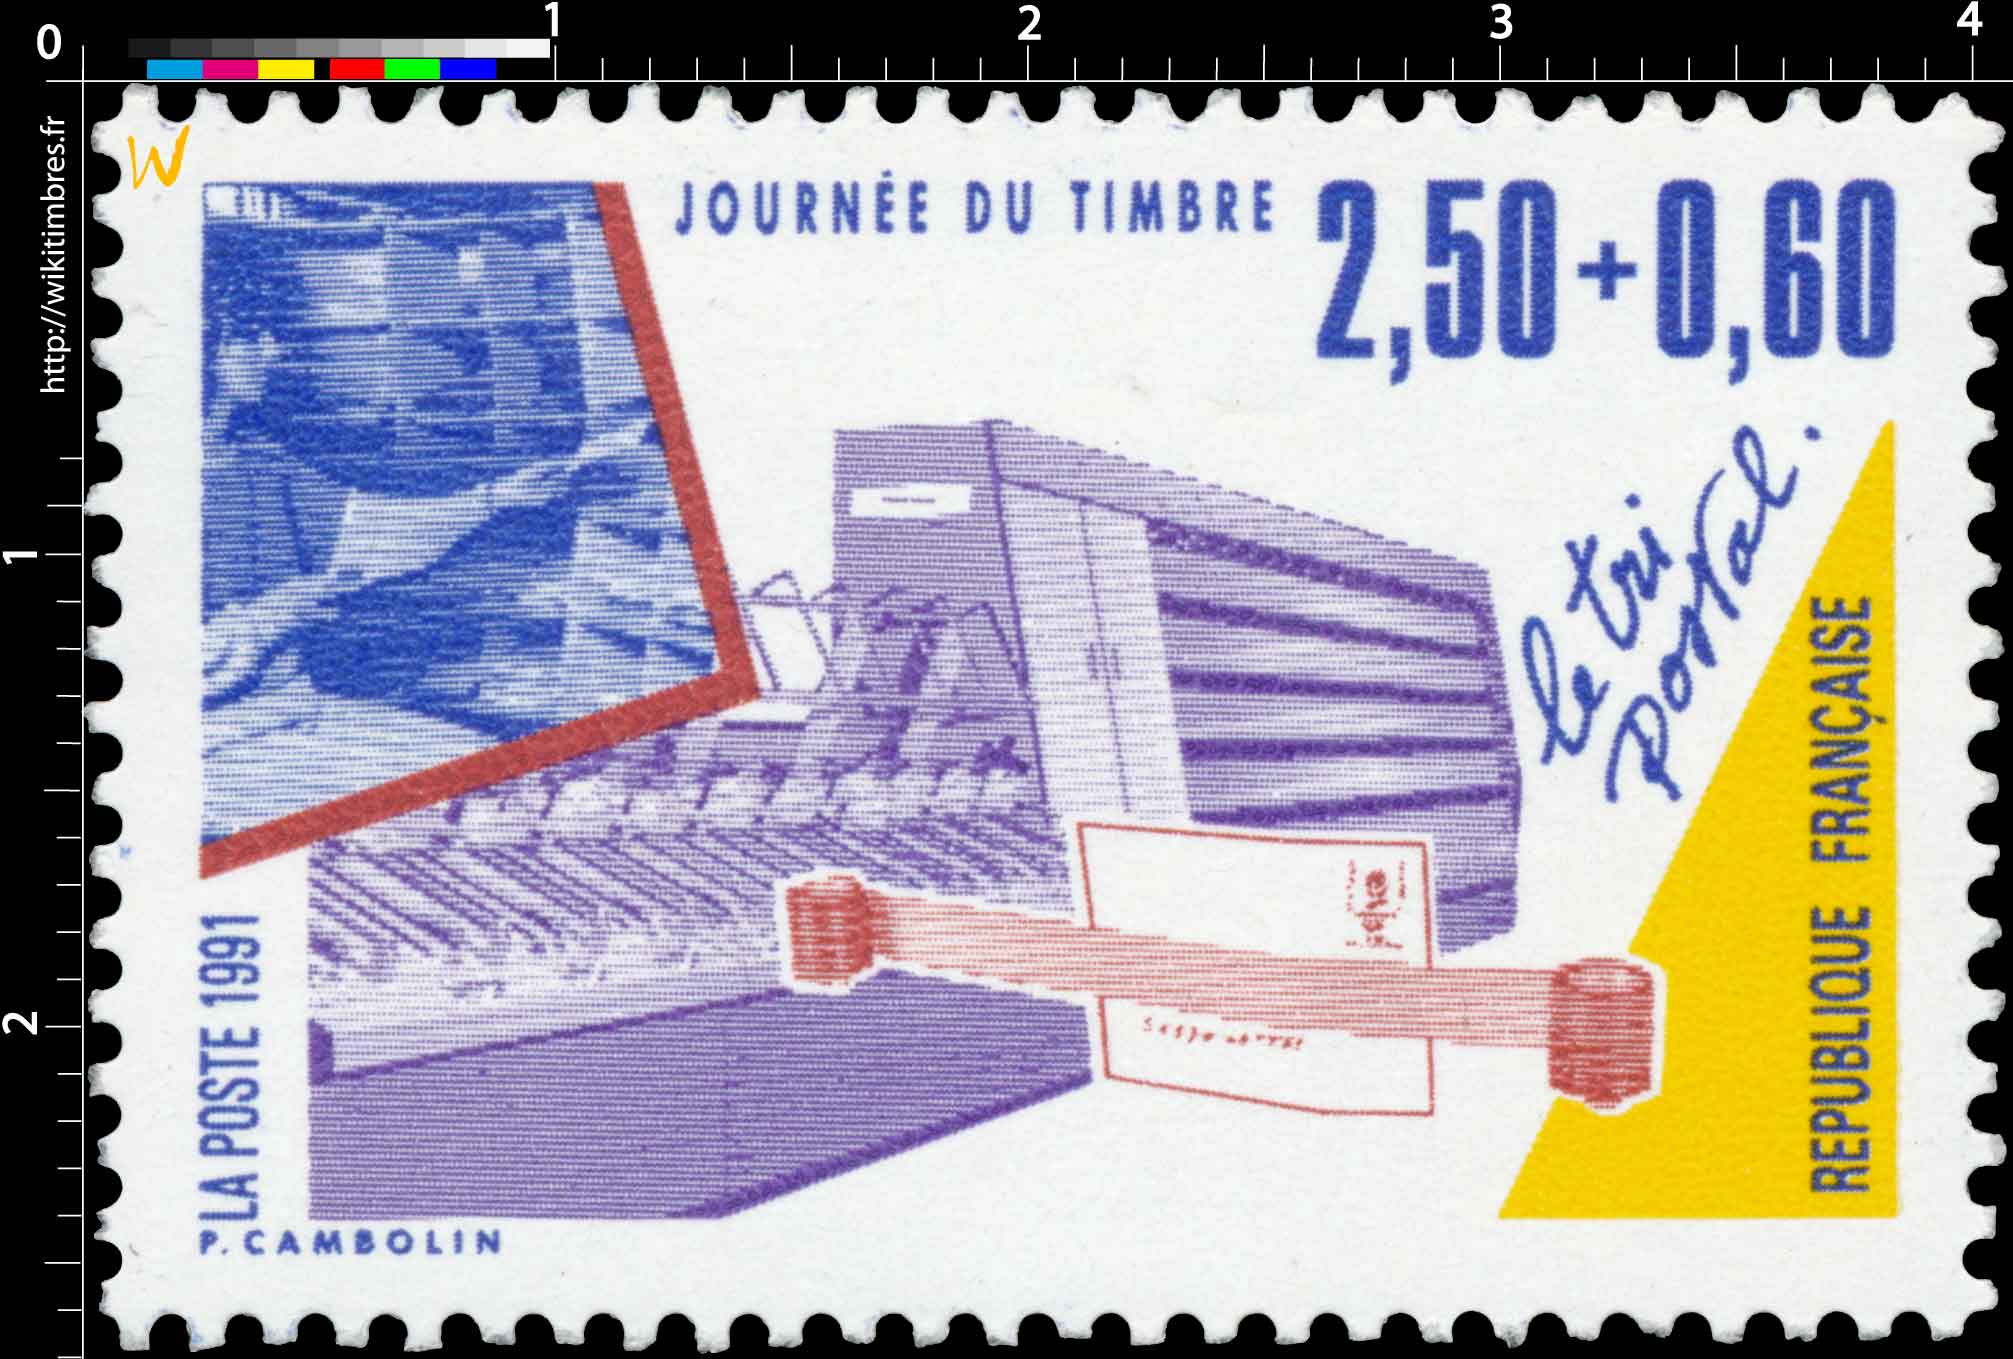 1991 JOURNÉE DU TIMBRE Le tri postal